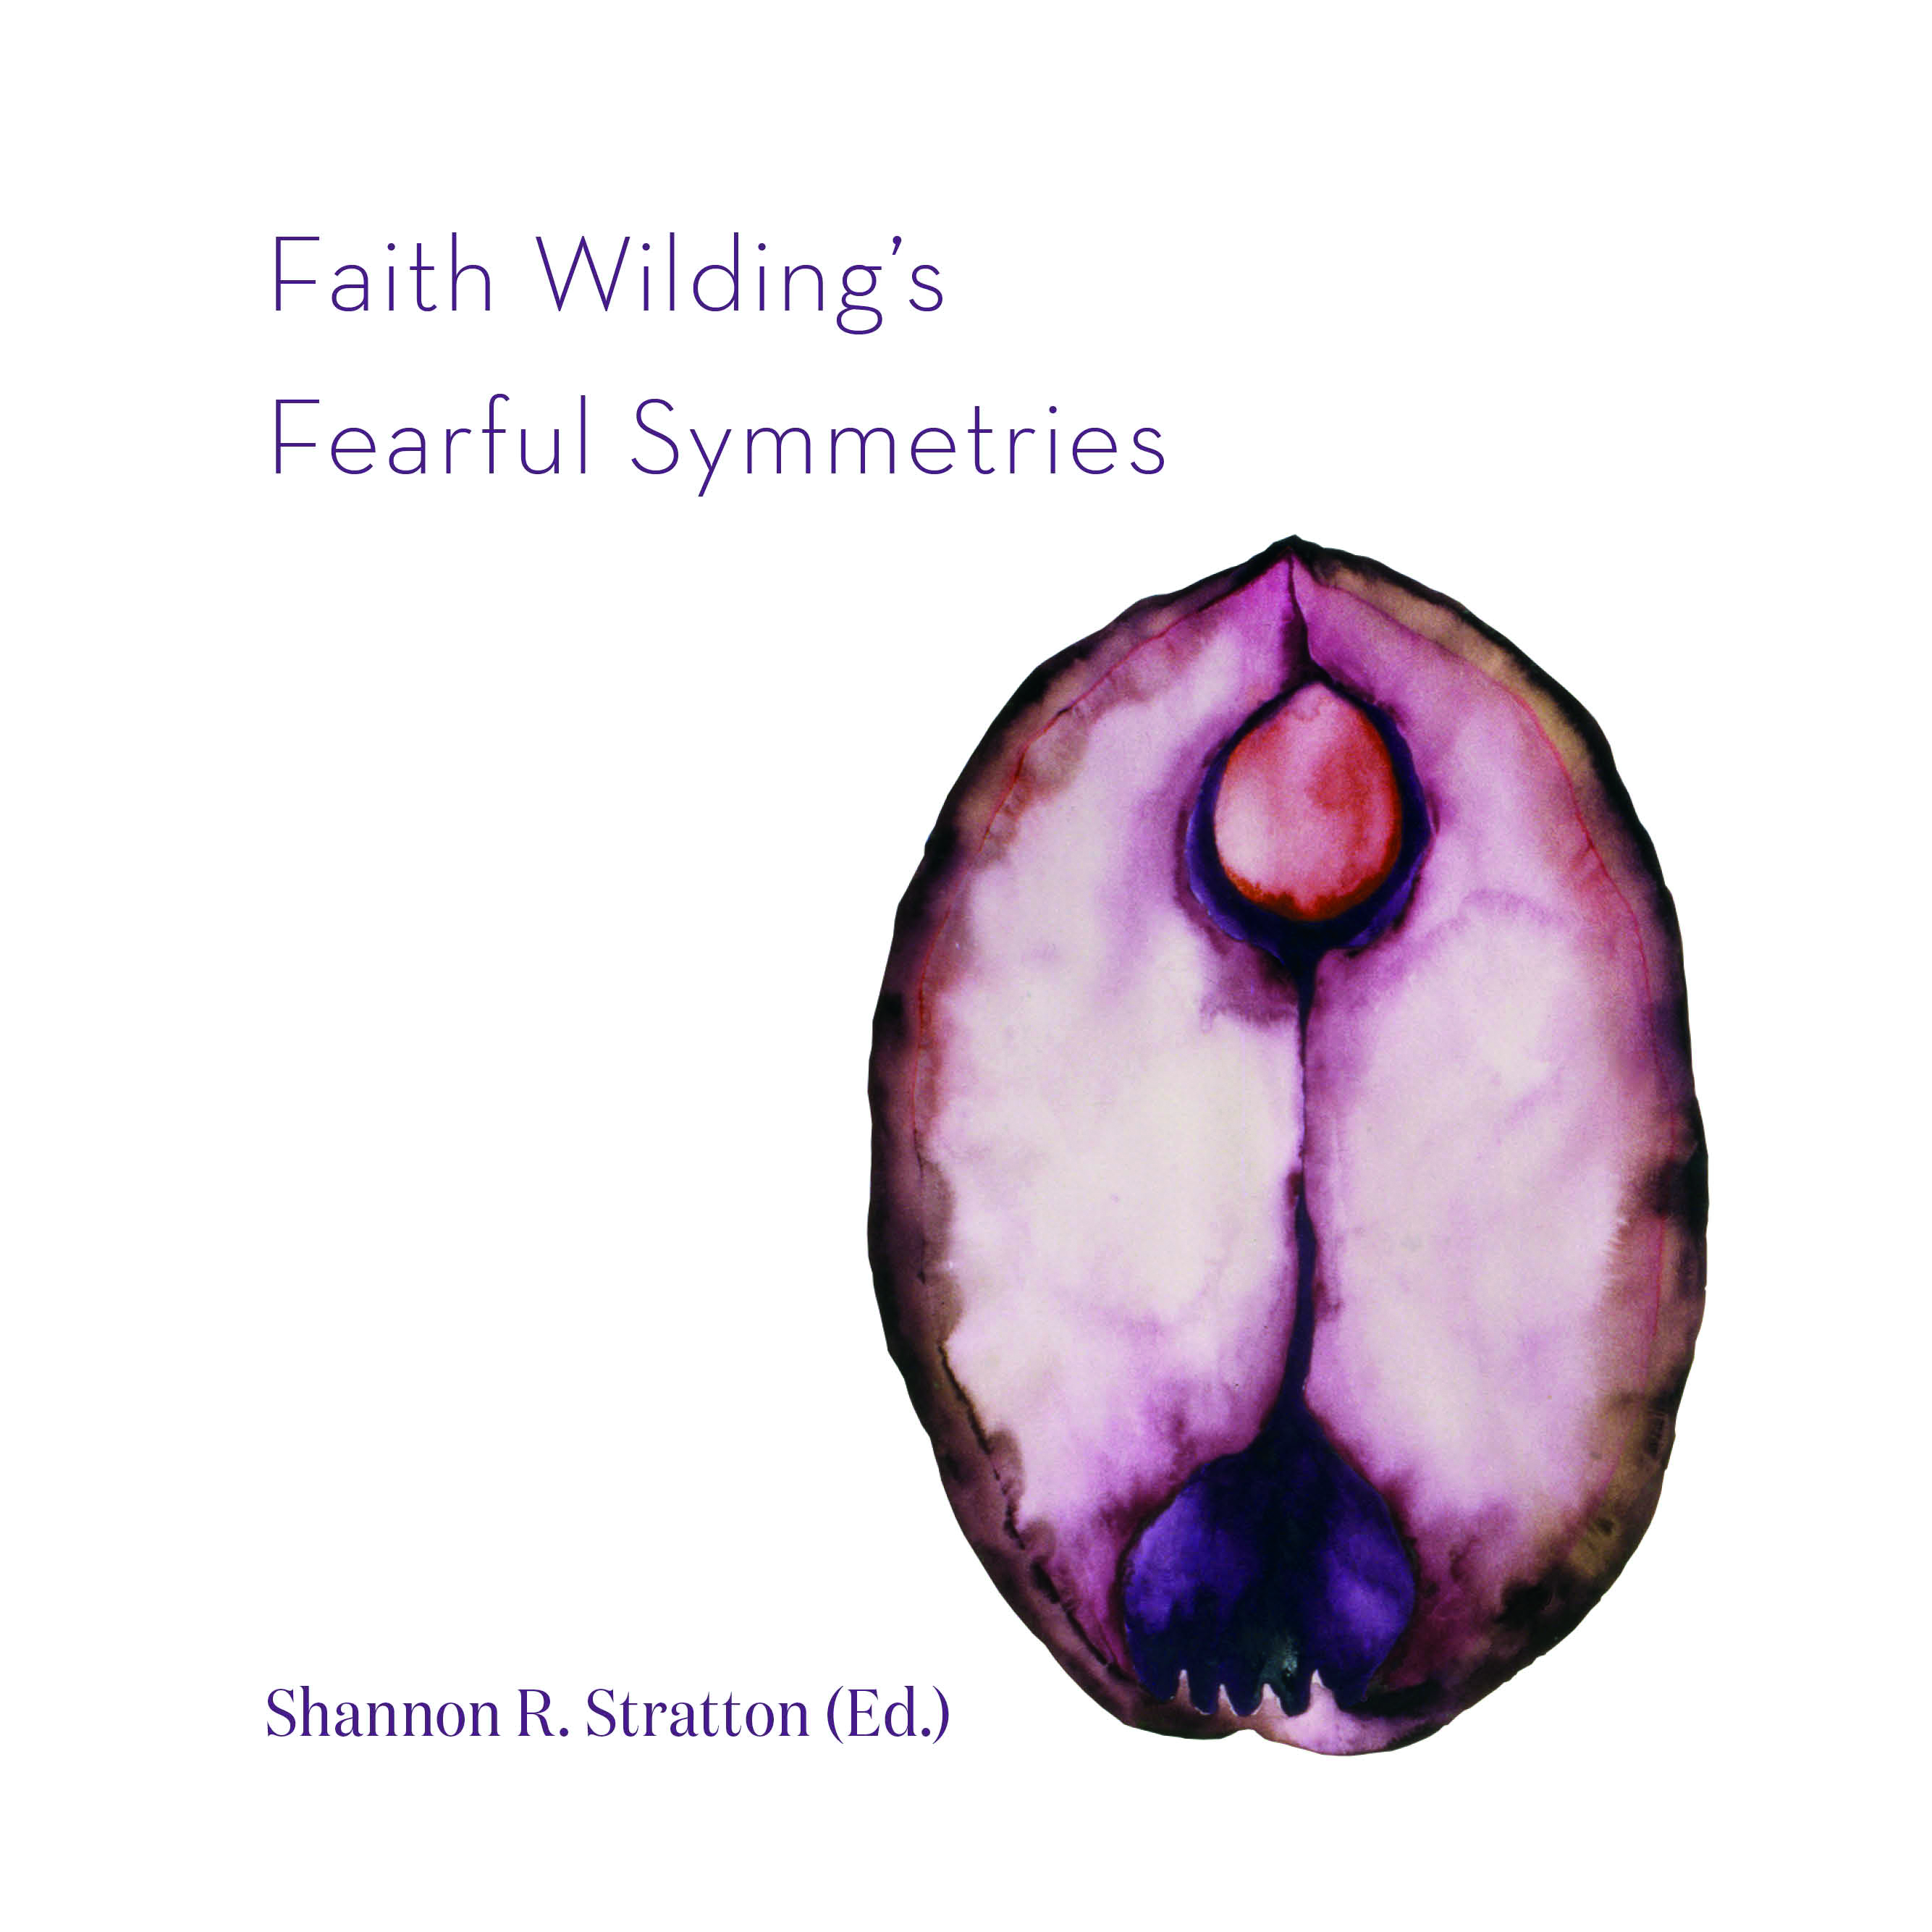 BOOK LAUNCH: FAITH WILDING'S FEARFUL SYMMETRIES